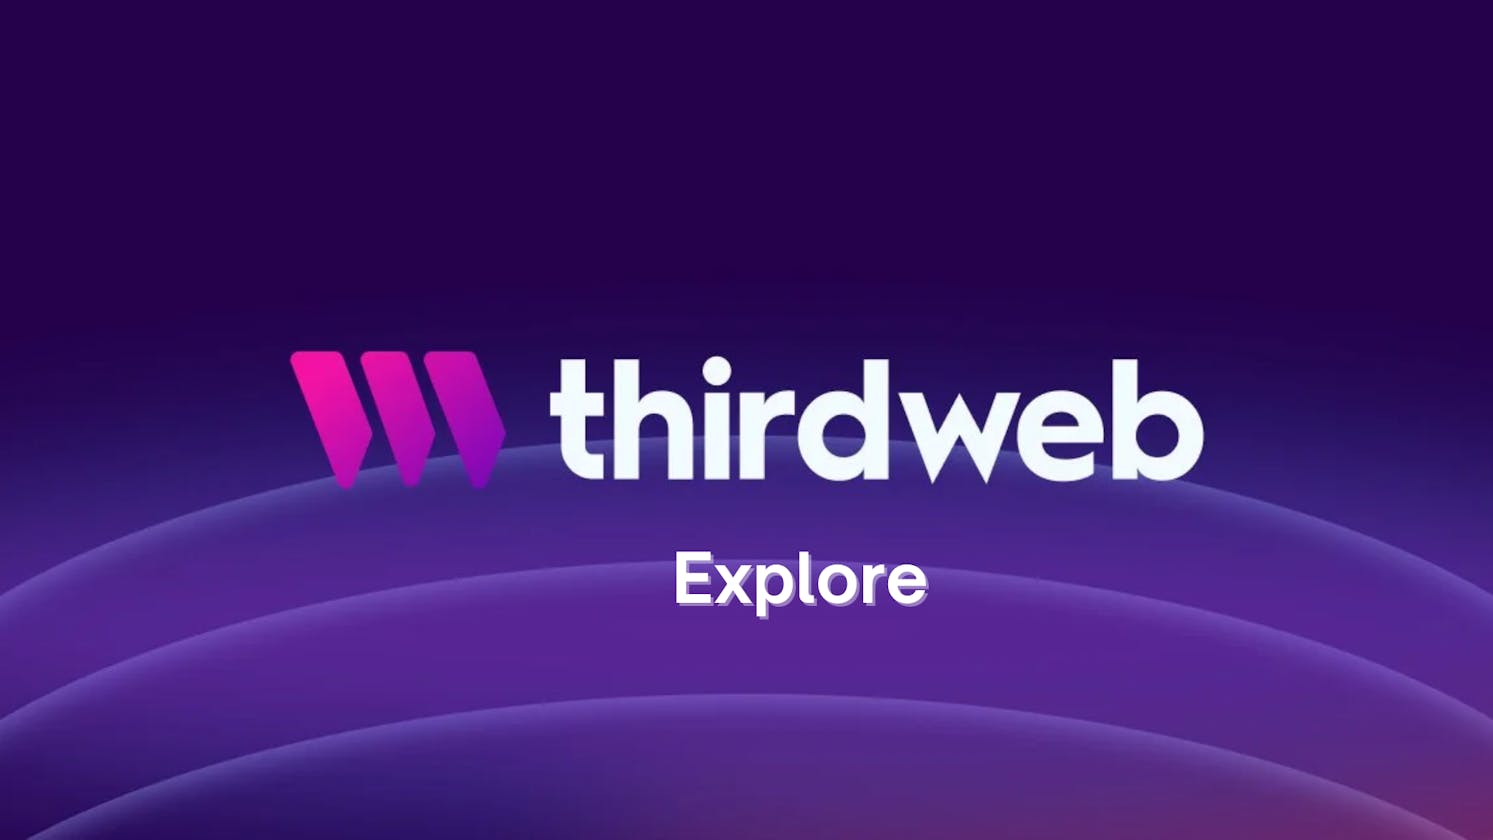 thirdweb Explore: A Fancy Tool or the Next Dev Meta?